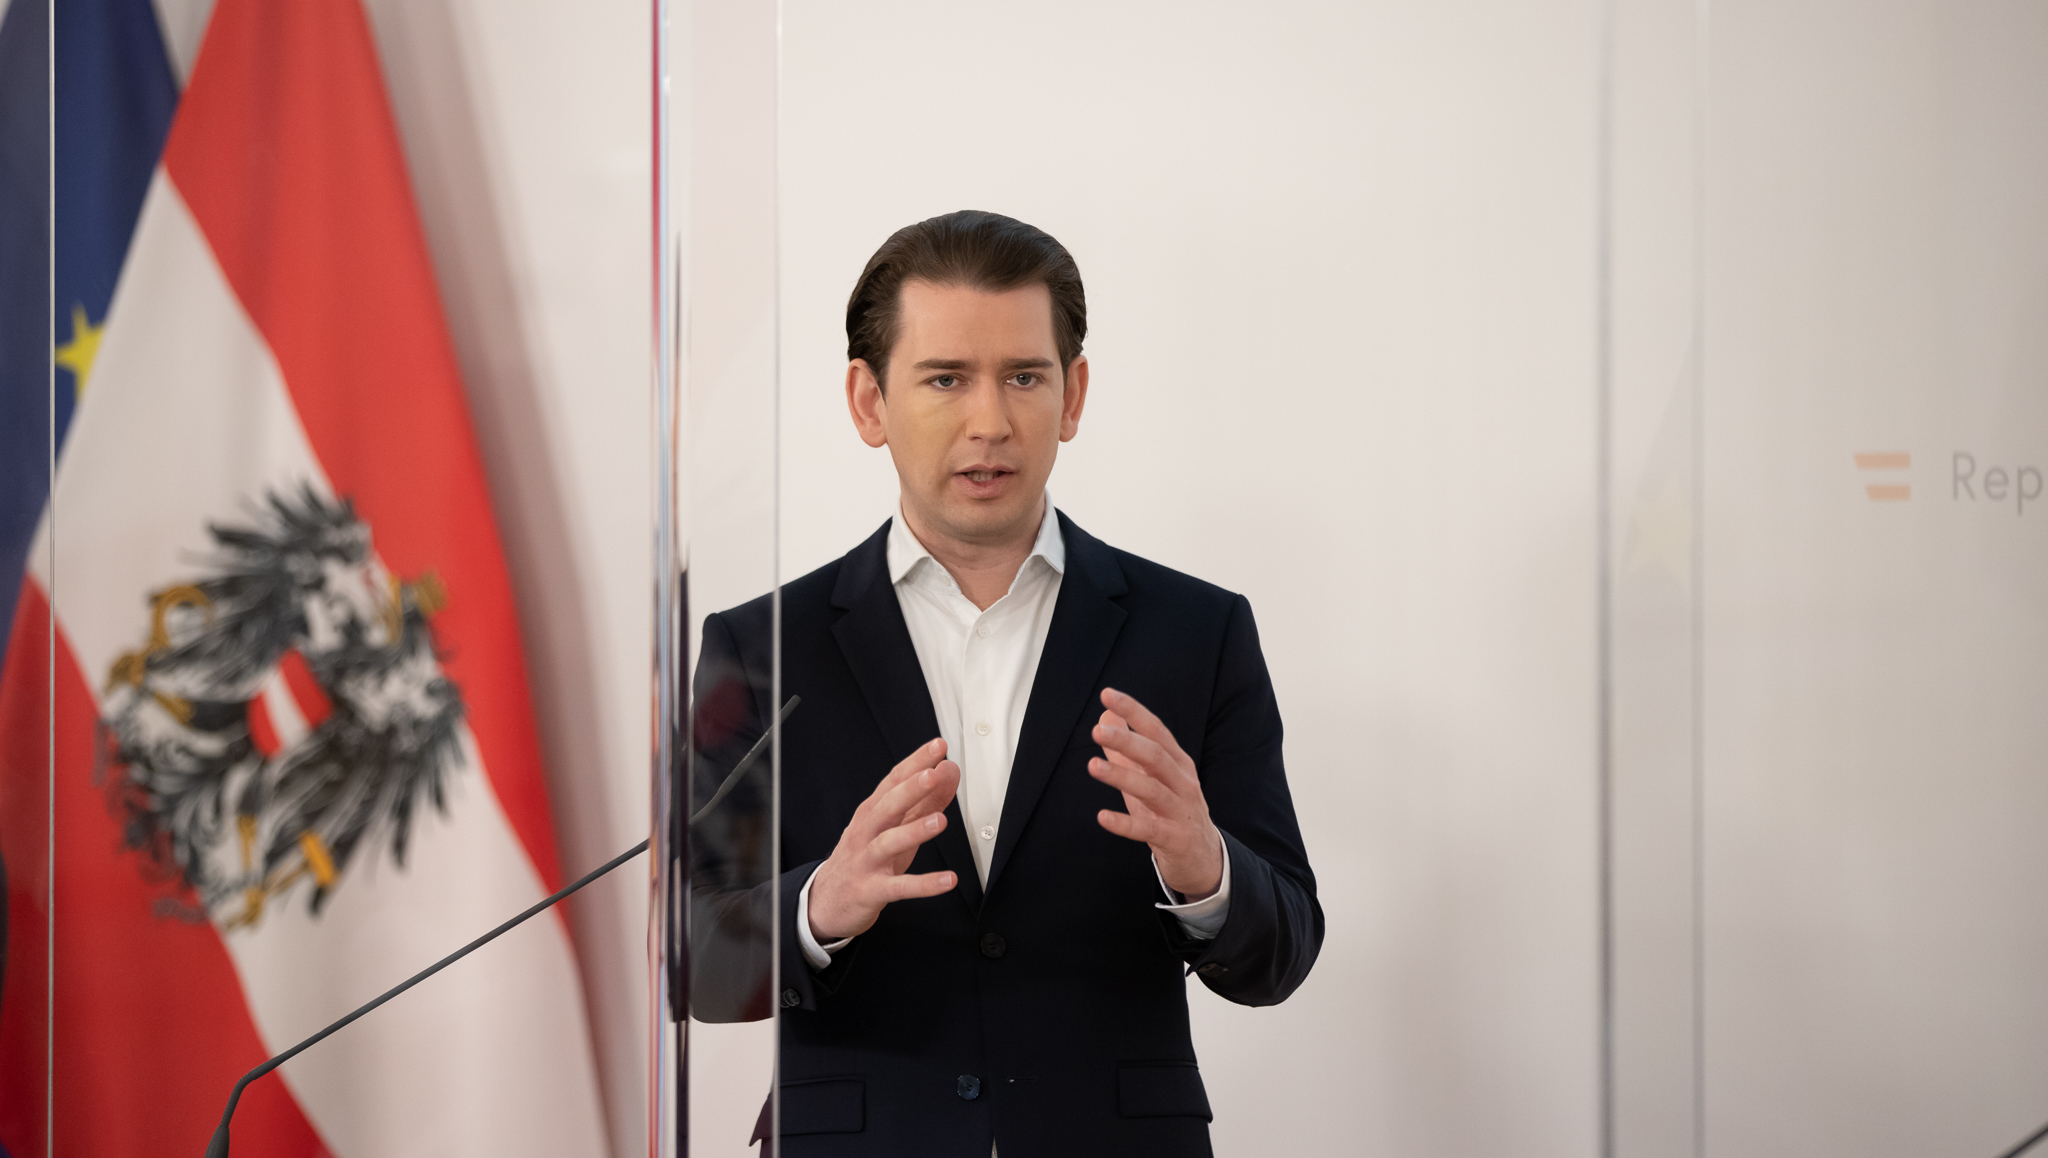 Kancelar Kurz Austrijancima: „Najgore je prošlo“. Ministrica turizma Köstinger:„Odmarajte u Austriji“